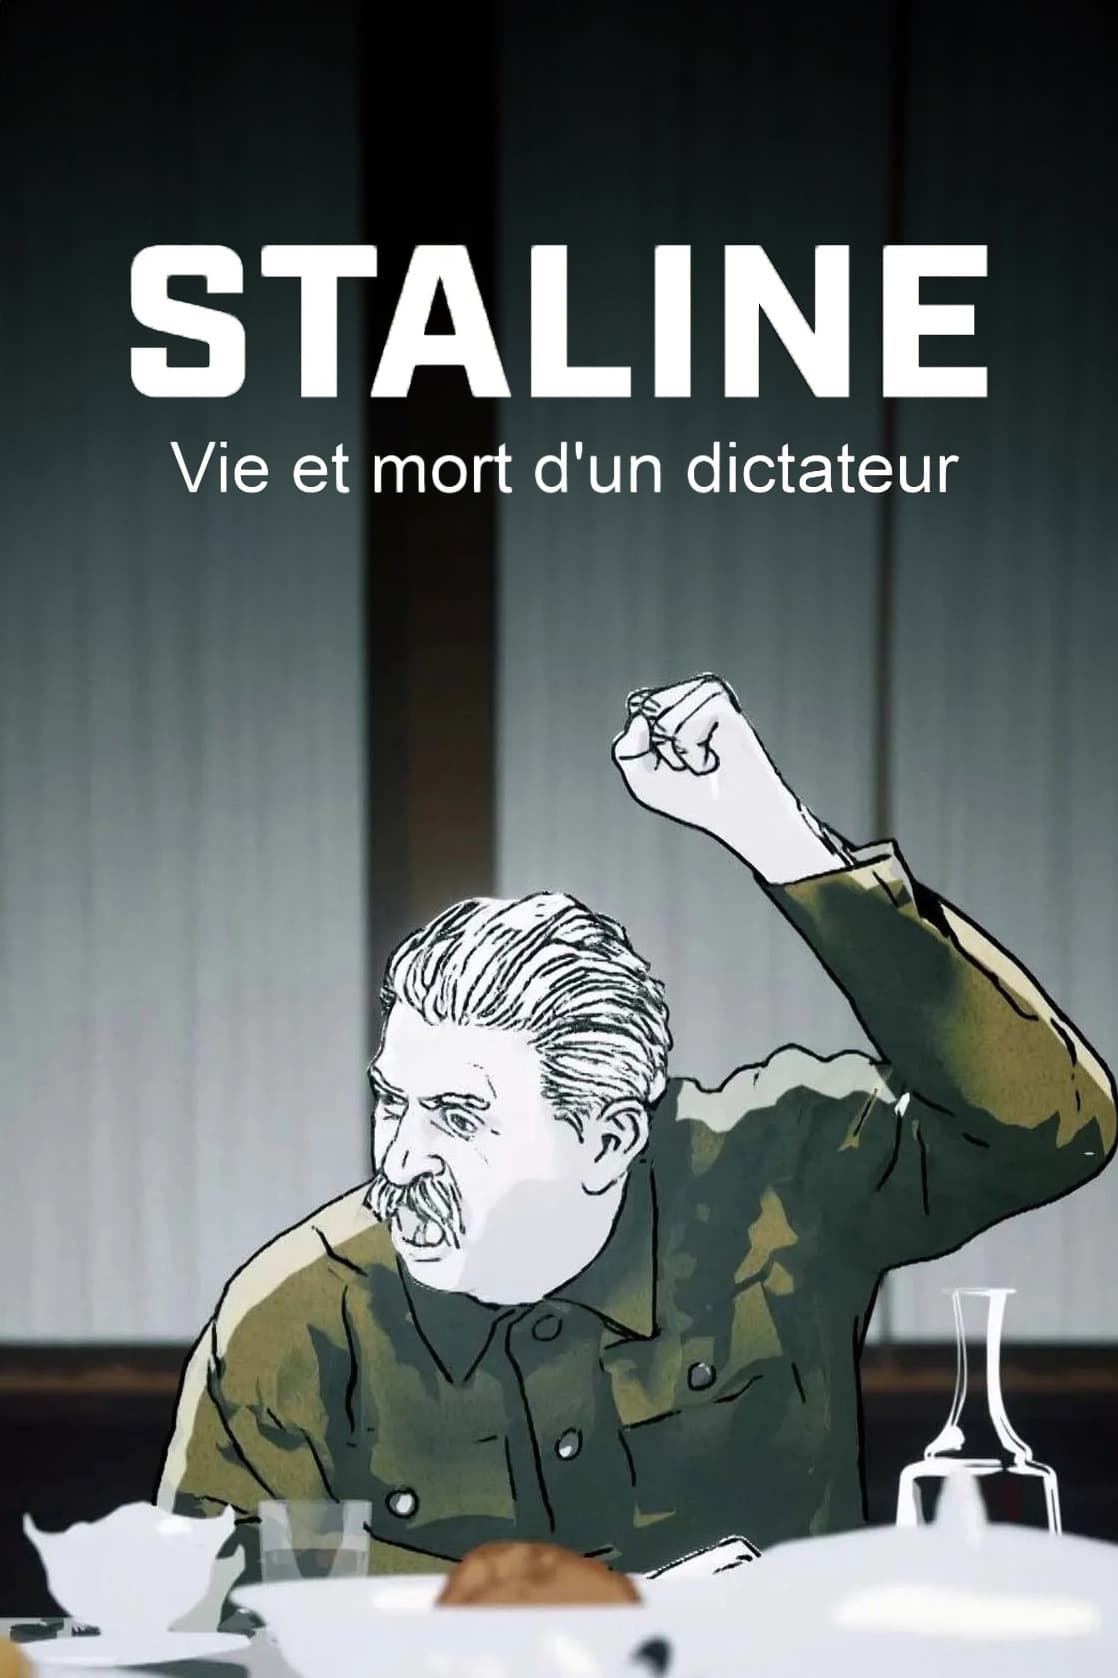 Stalin – Leben und Sterben eines Diktators